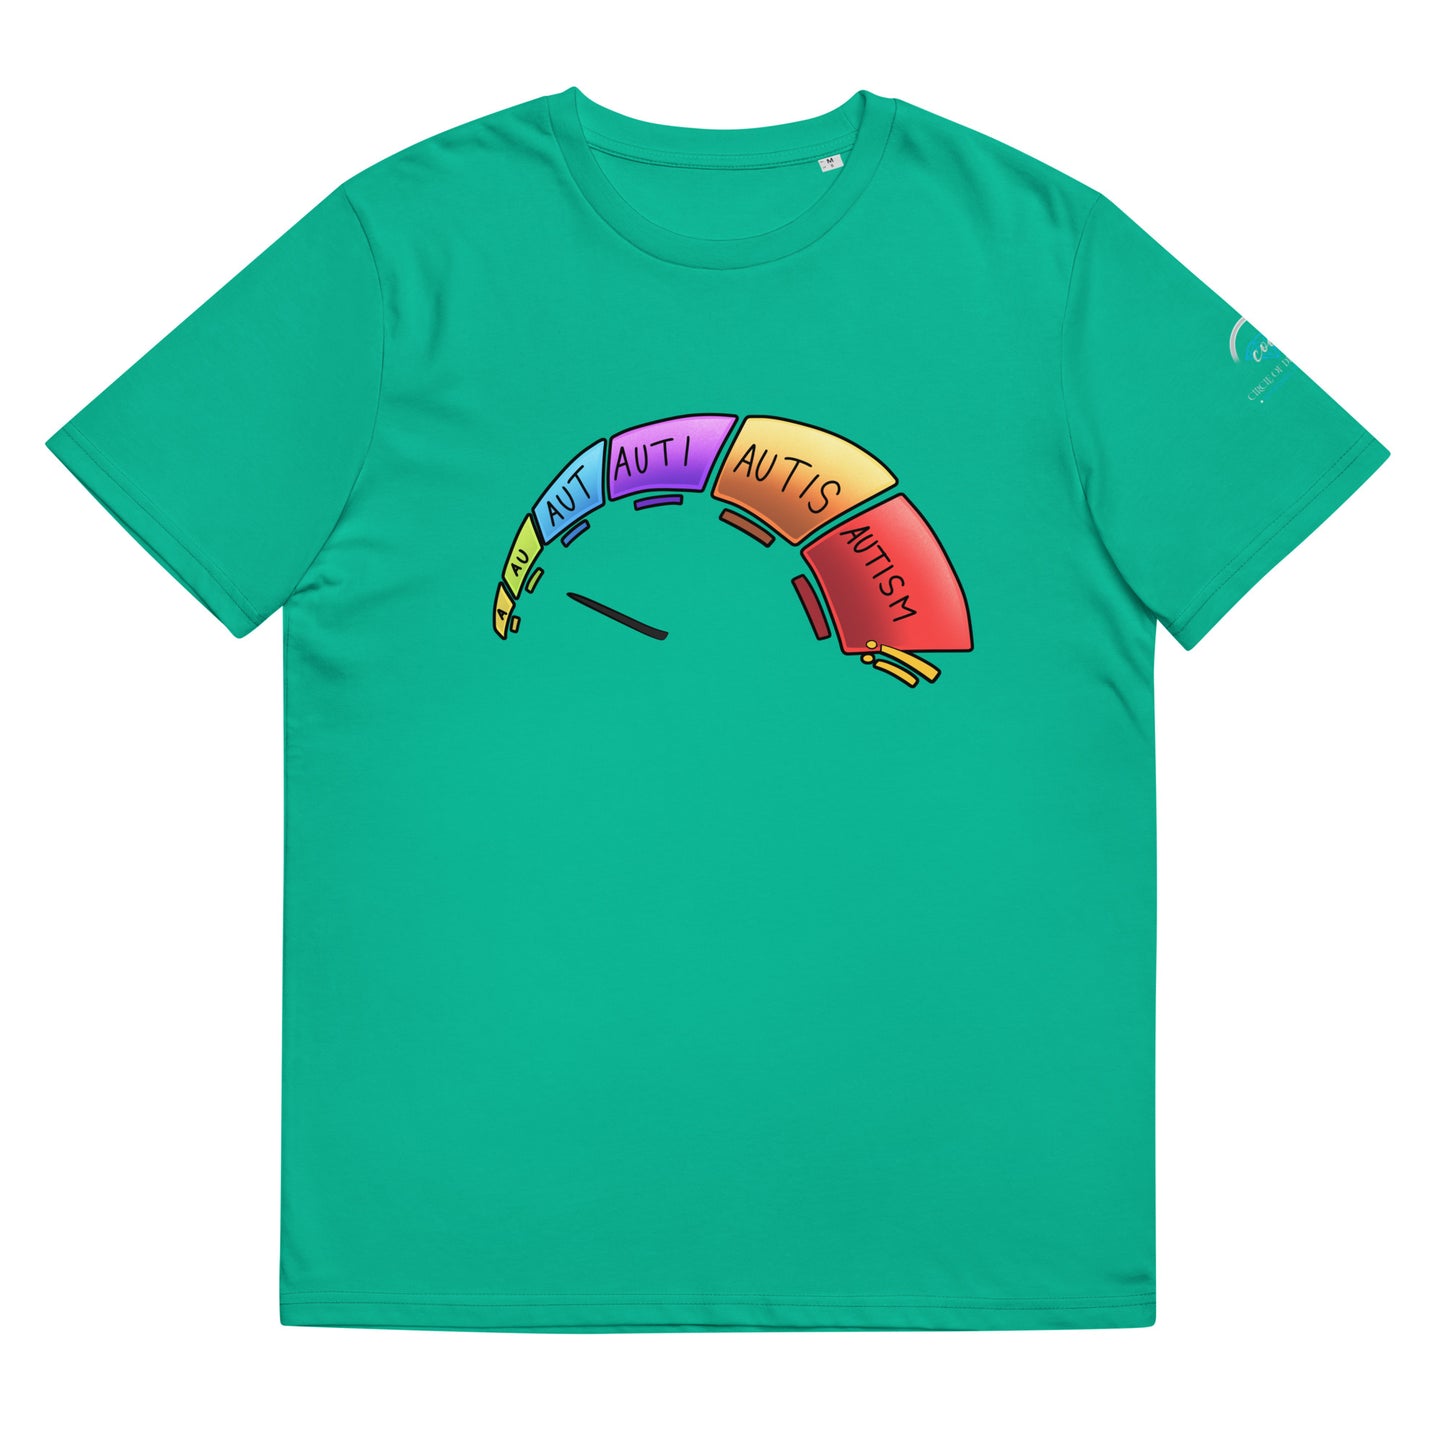 Autism 2 T-Shirt